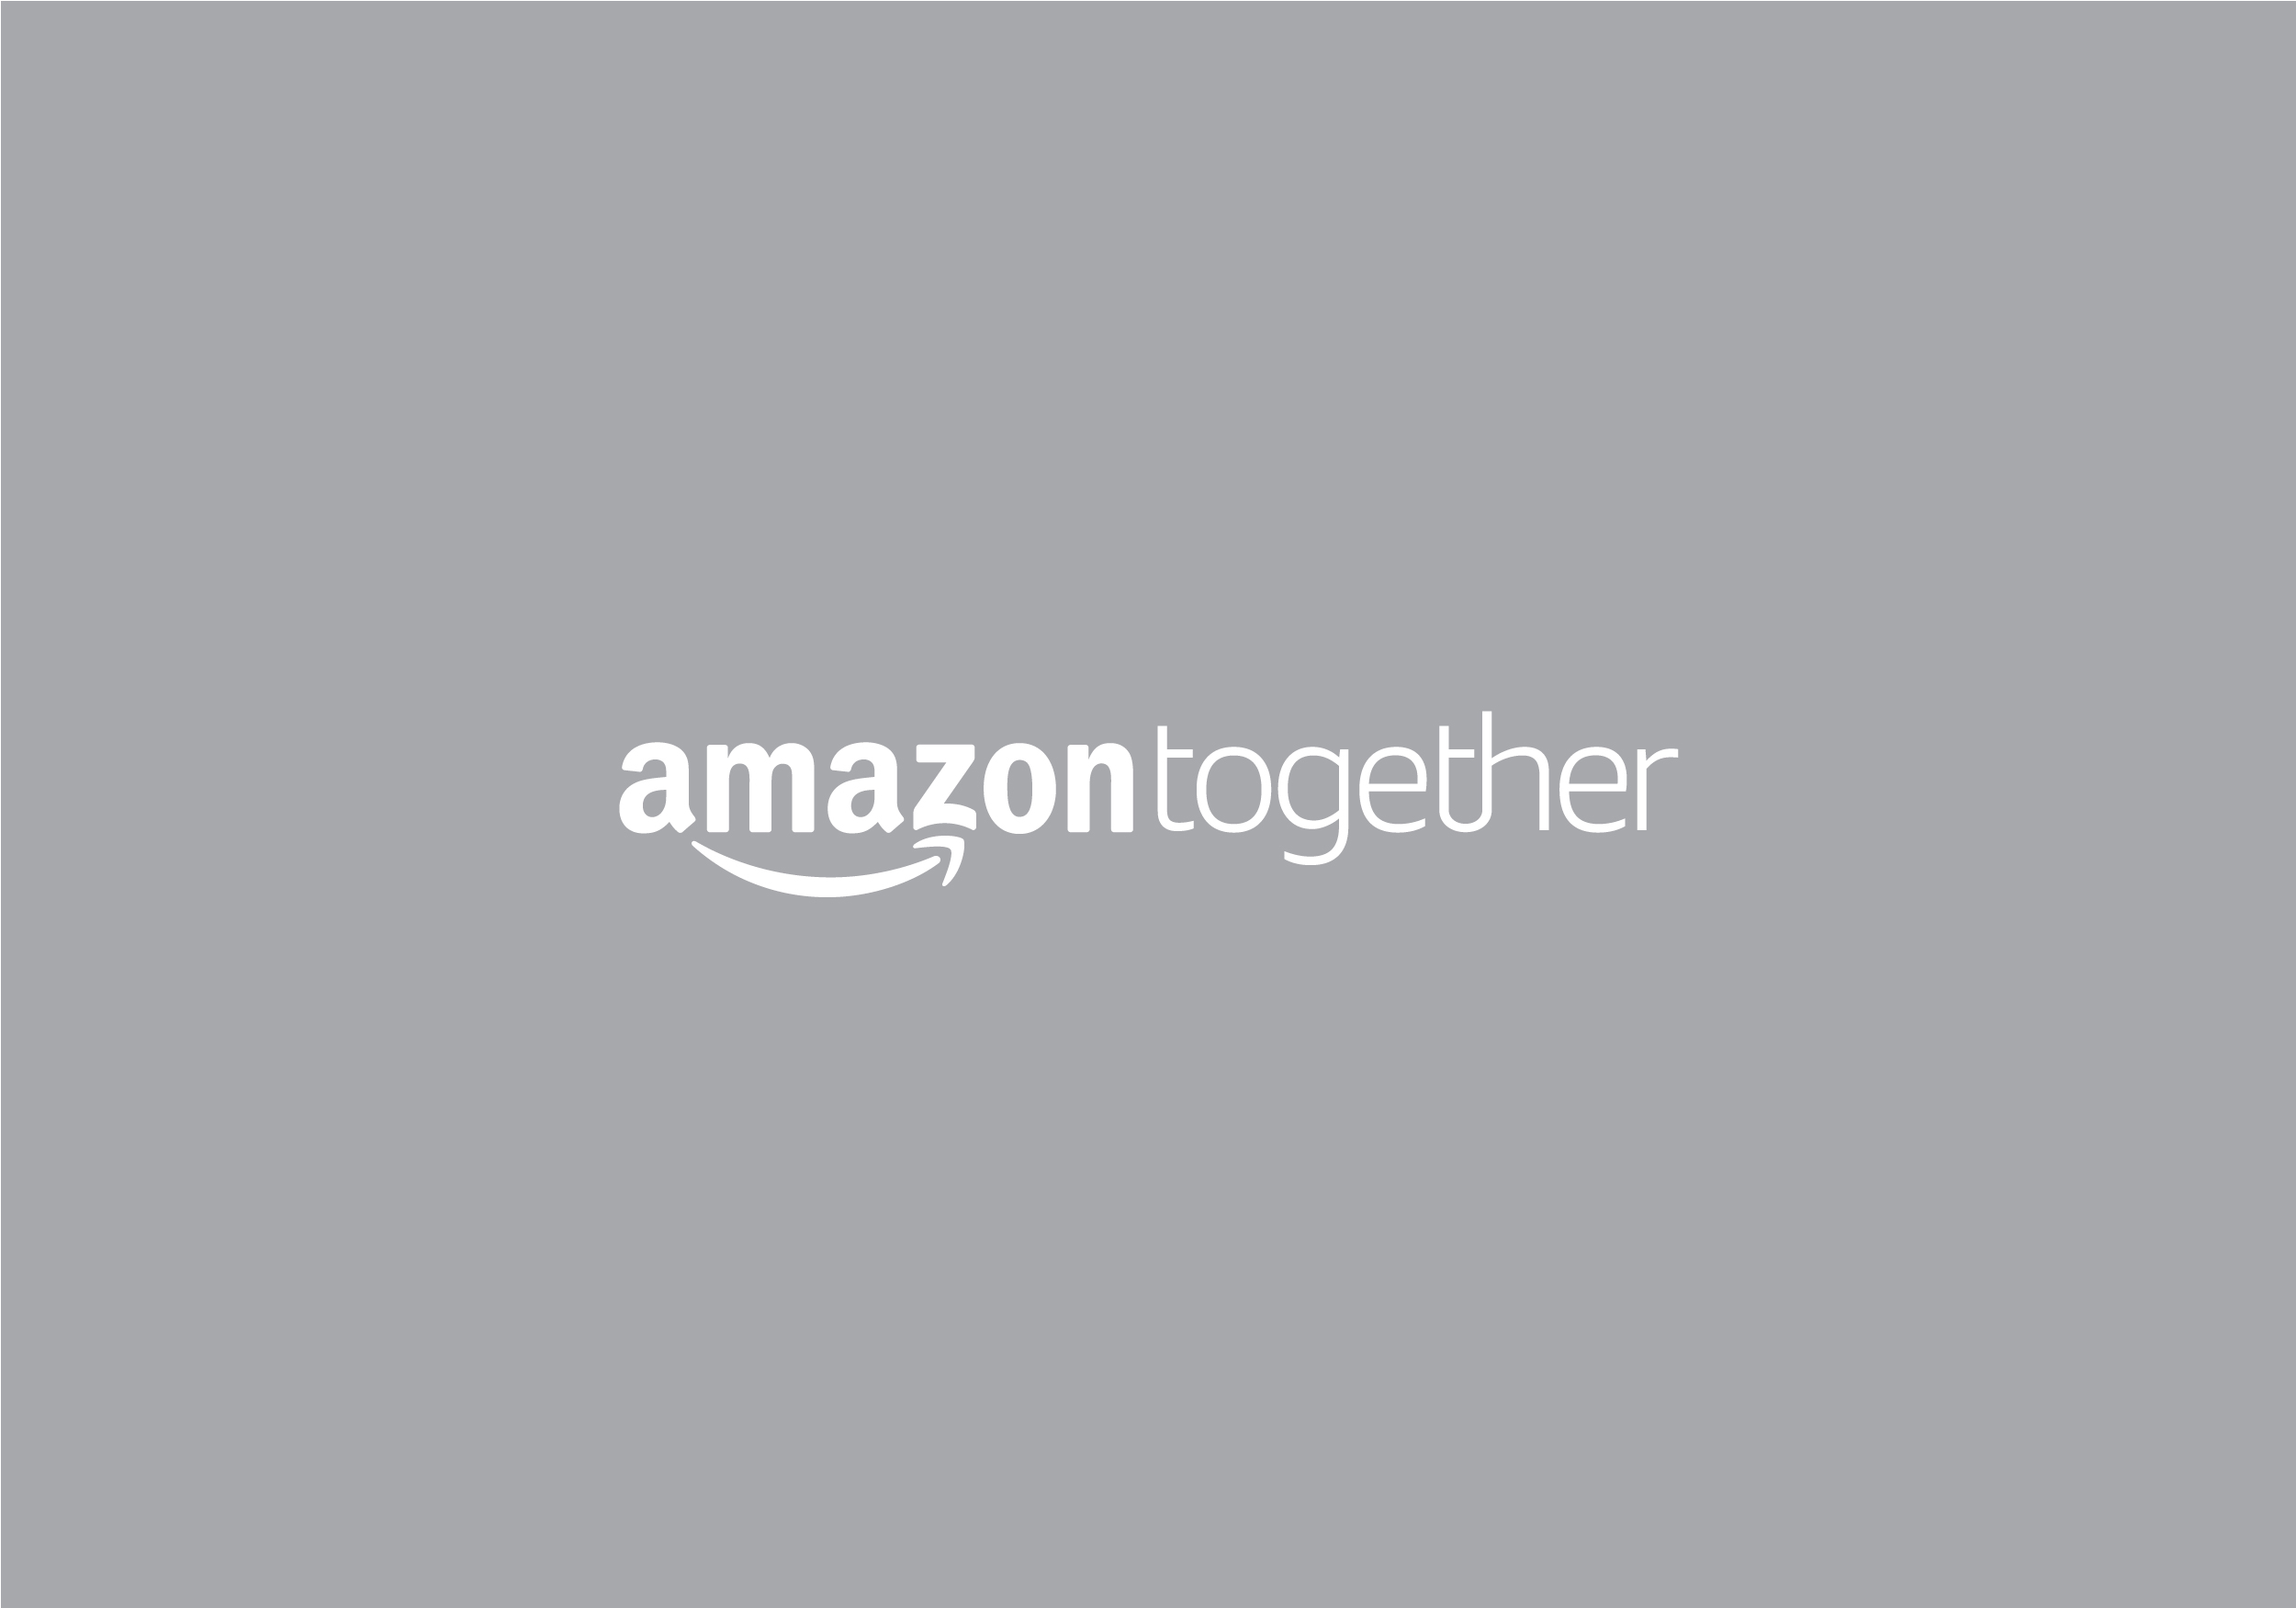 AmazonTogether_logo.jpg